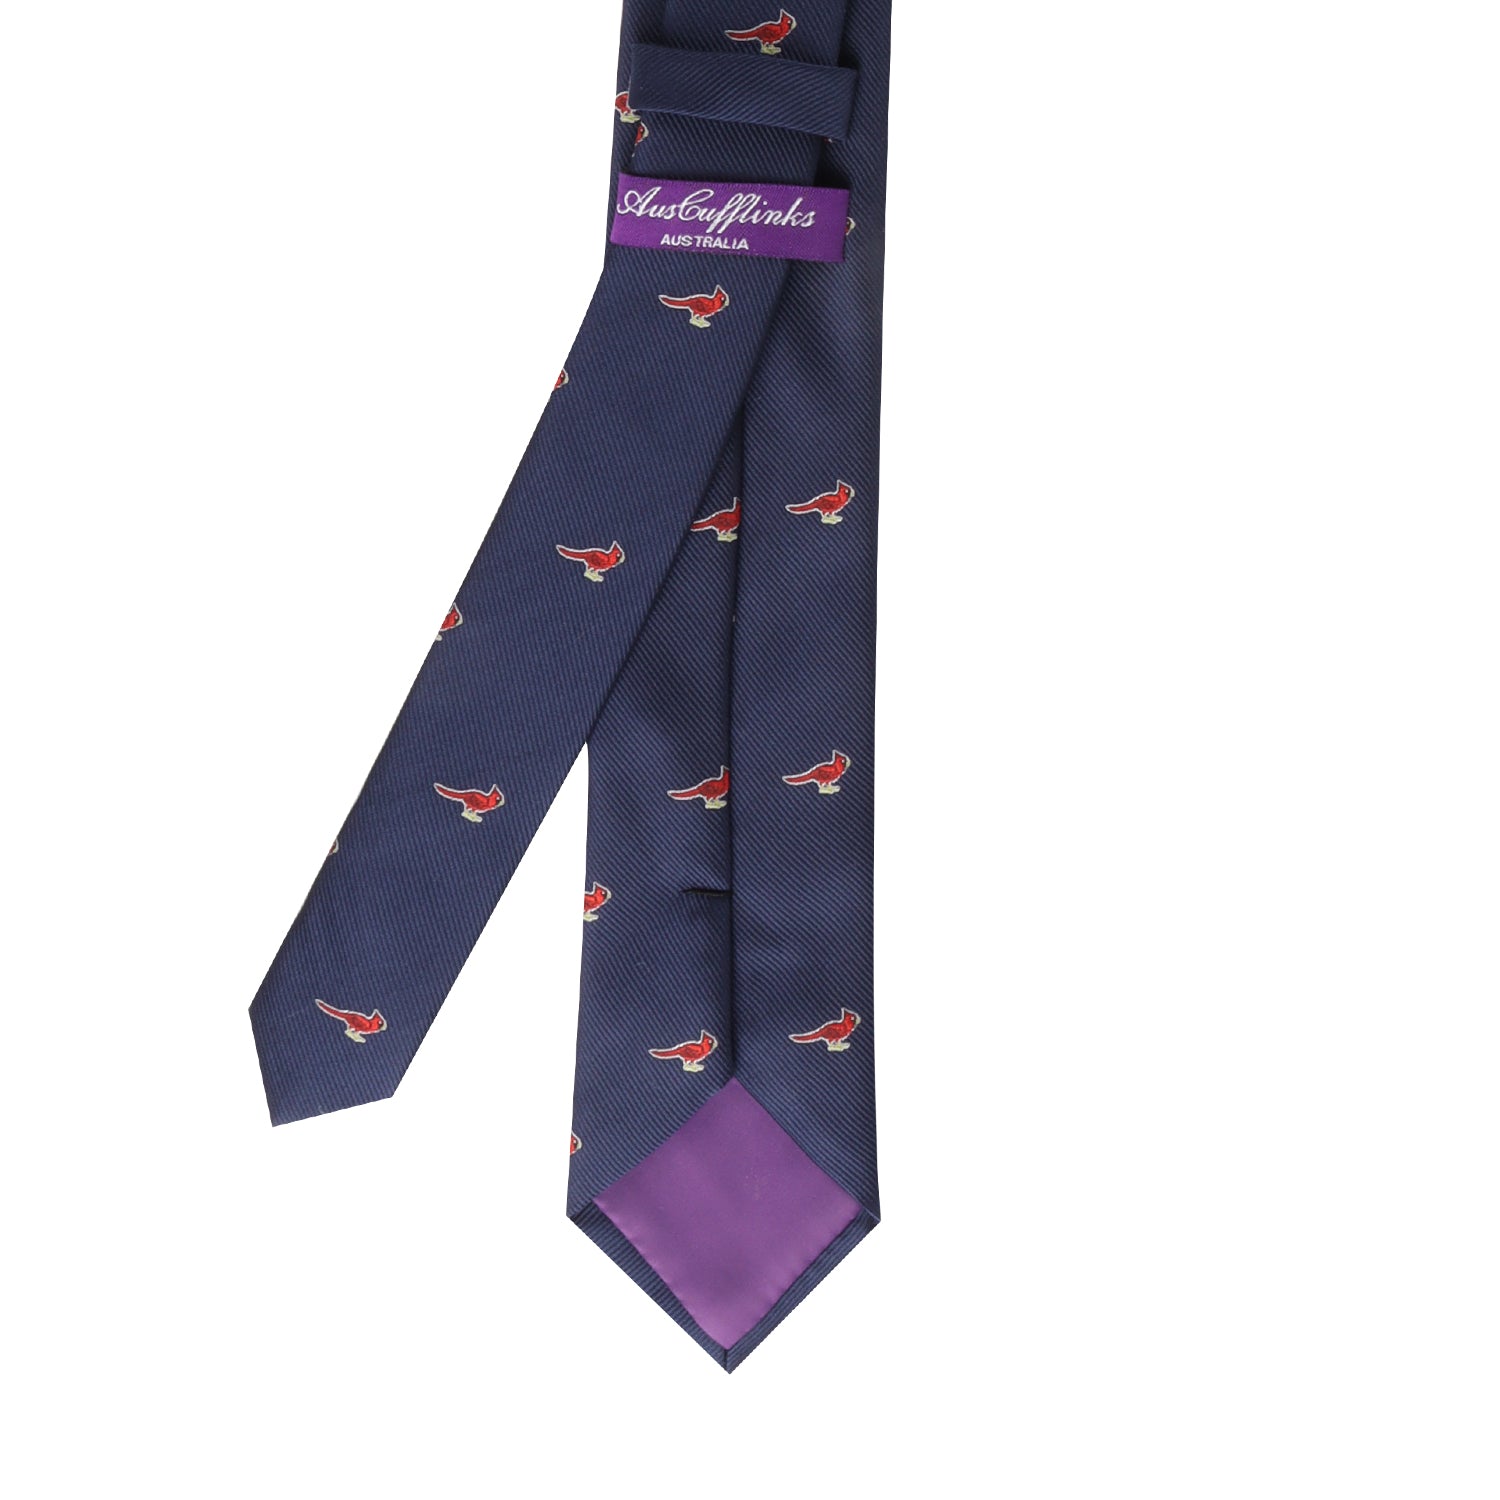 A vividly elegant necktie featuring a Cardinal Bird design.